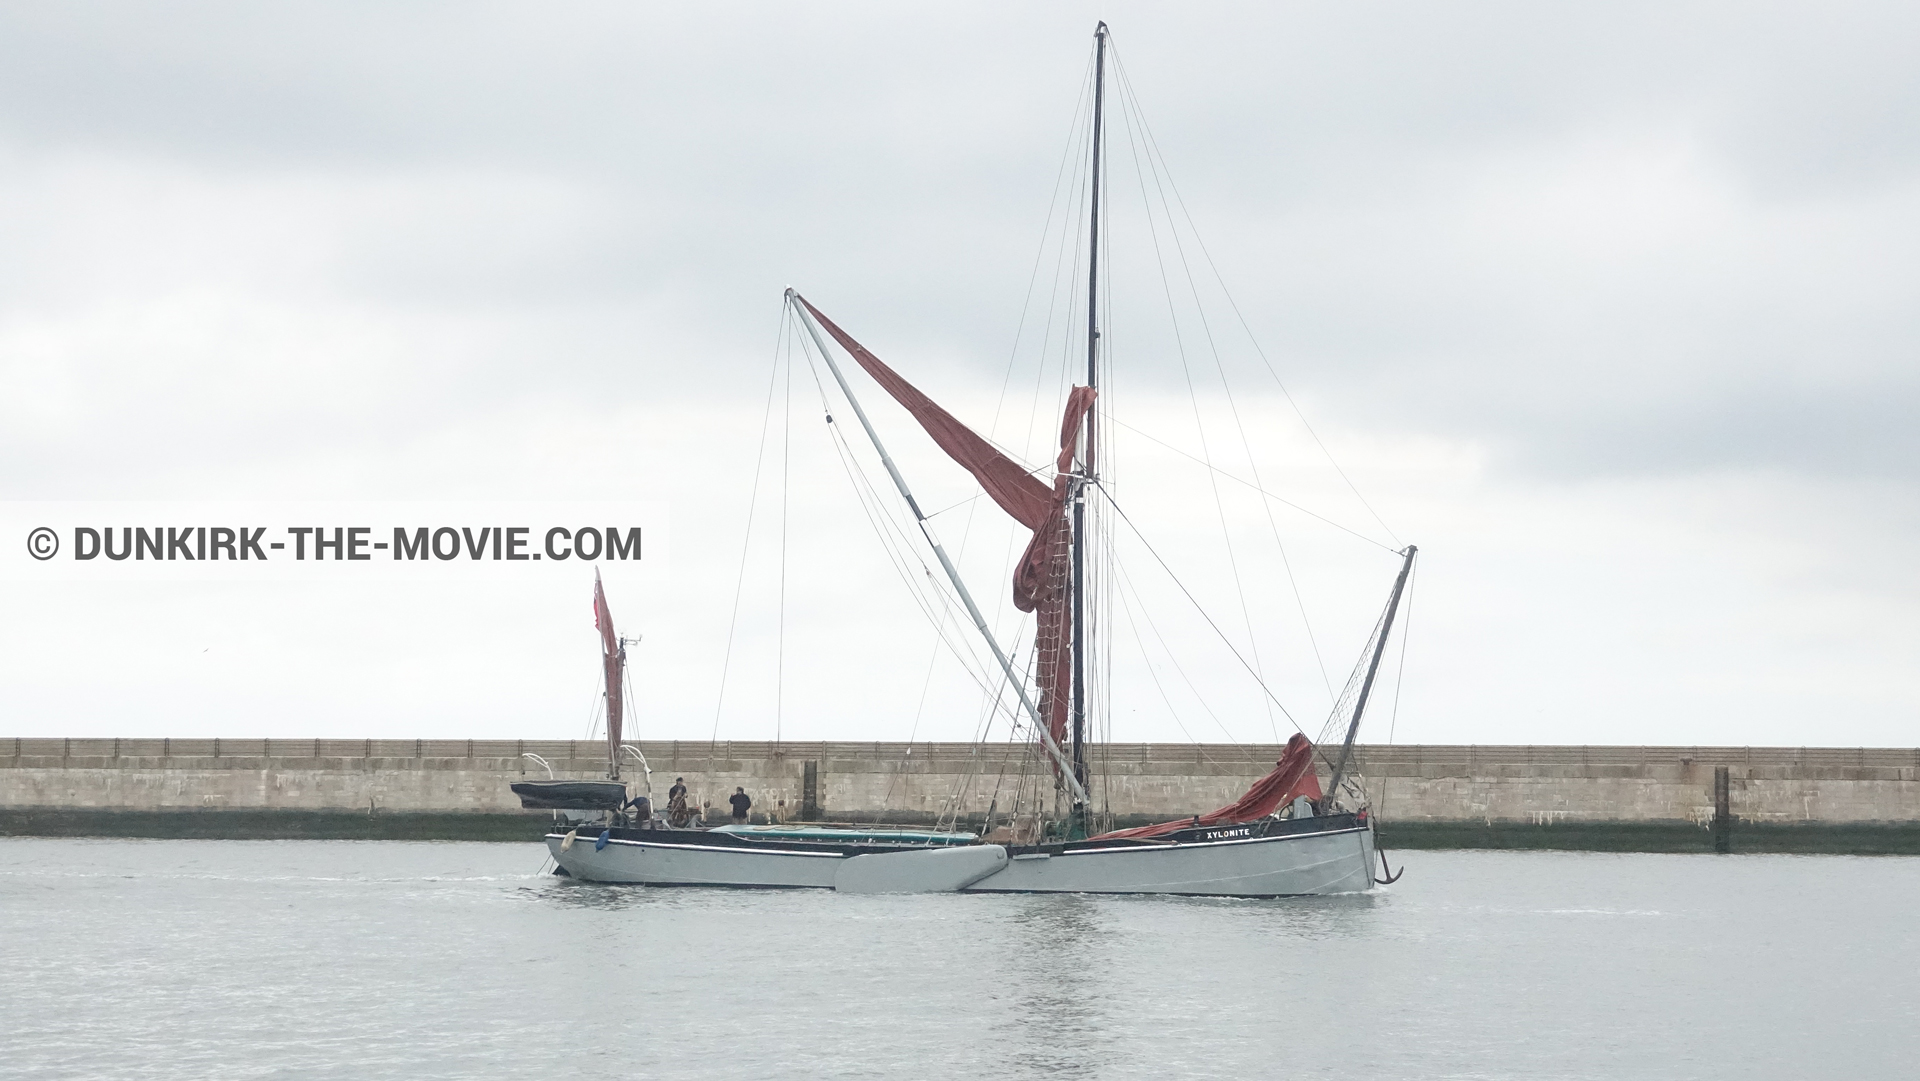 Fotos con barco, muelle del ESTE, Xylonite,  durante el rodaje de la película Dunkerque de Nolan